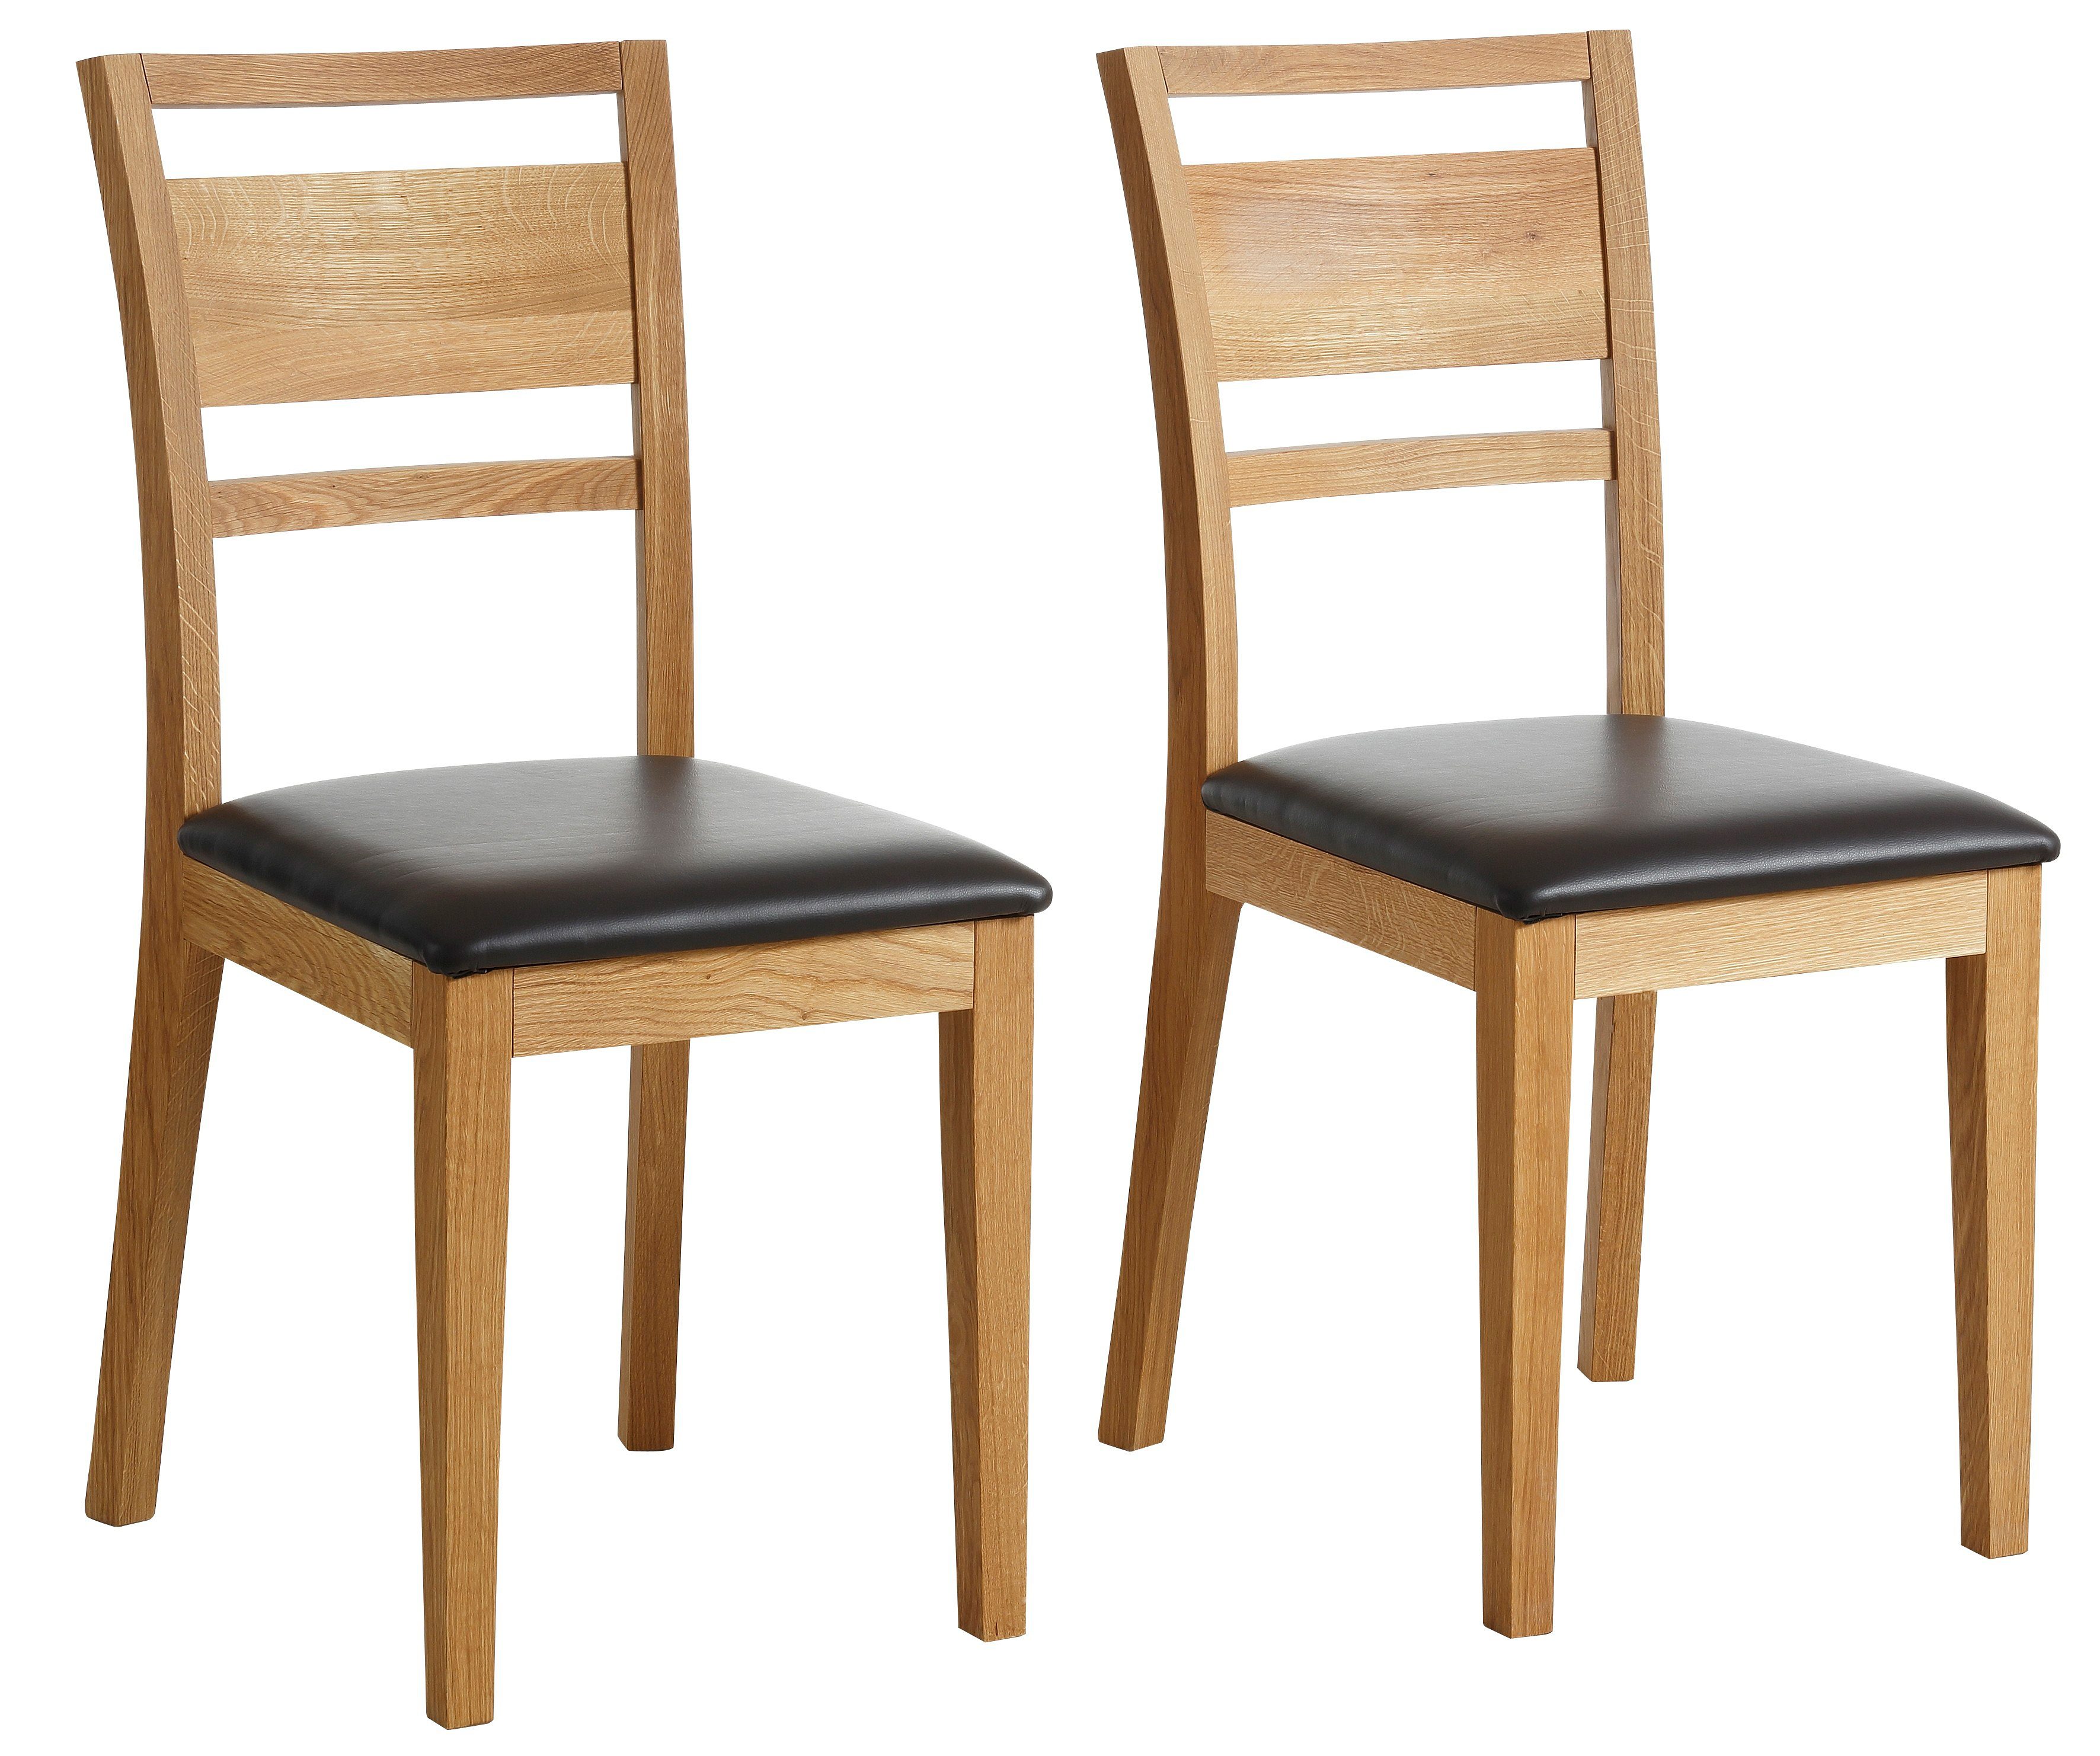 Premium collection by Home affaire Stoel Helsinki Houten stoel, keukenstoel (set, 2 stuks)